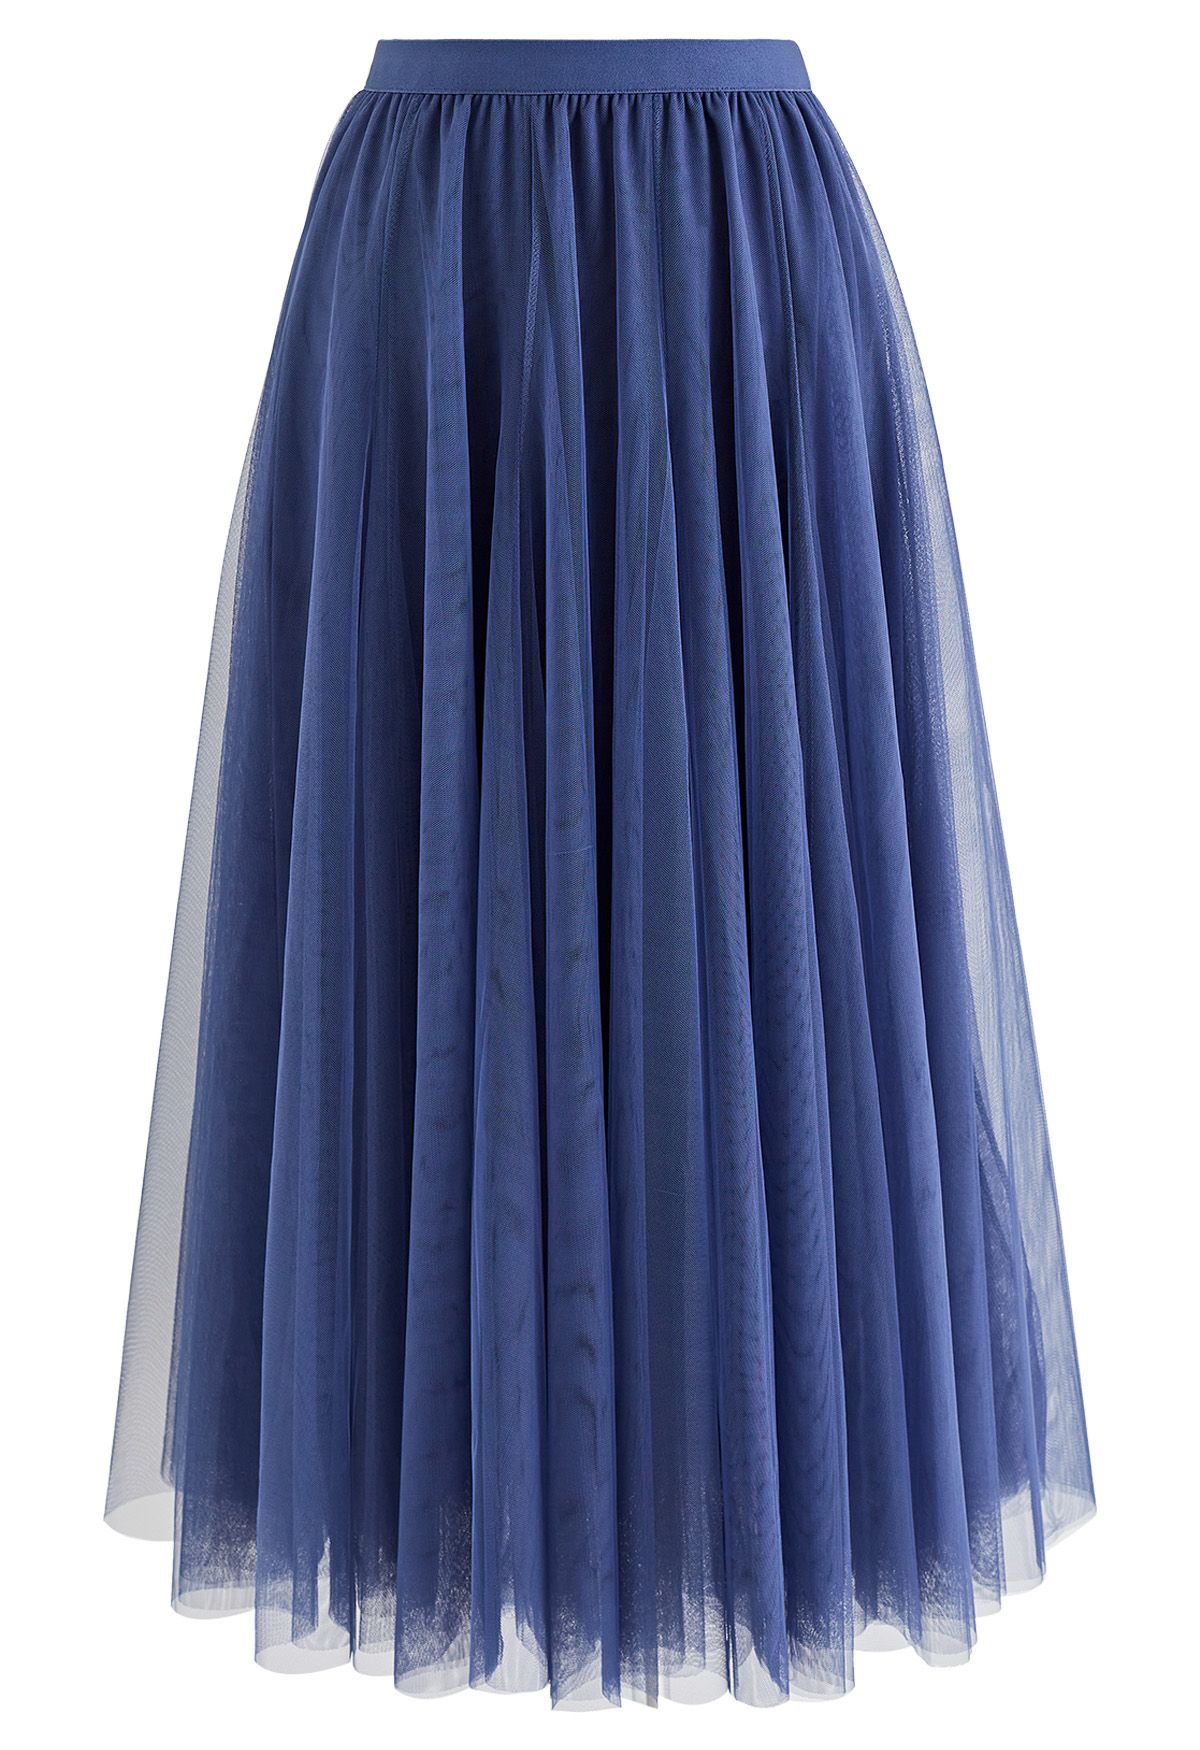 My Secret Garden Tulle Maxi Skirt in Dusty Blue